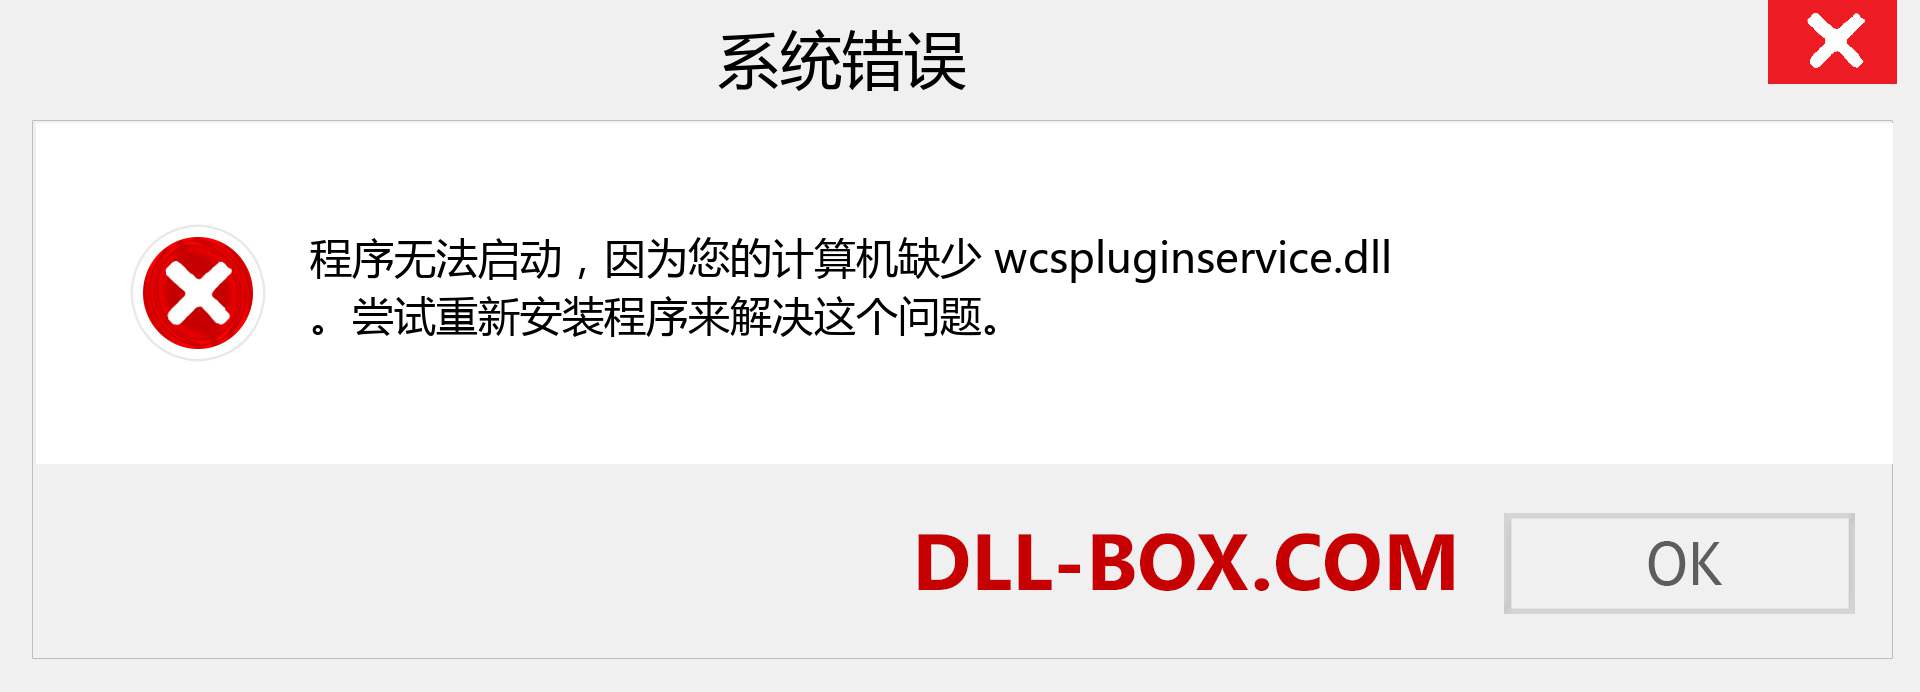 wcspluginservice.dll 文件丢失？。 适用于 Windows 7、8、10 的下载 - 修复 Windows、照片、图像上的 wcspluginservice dll 丢失错误